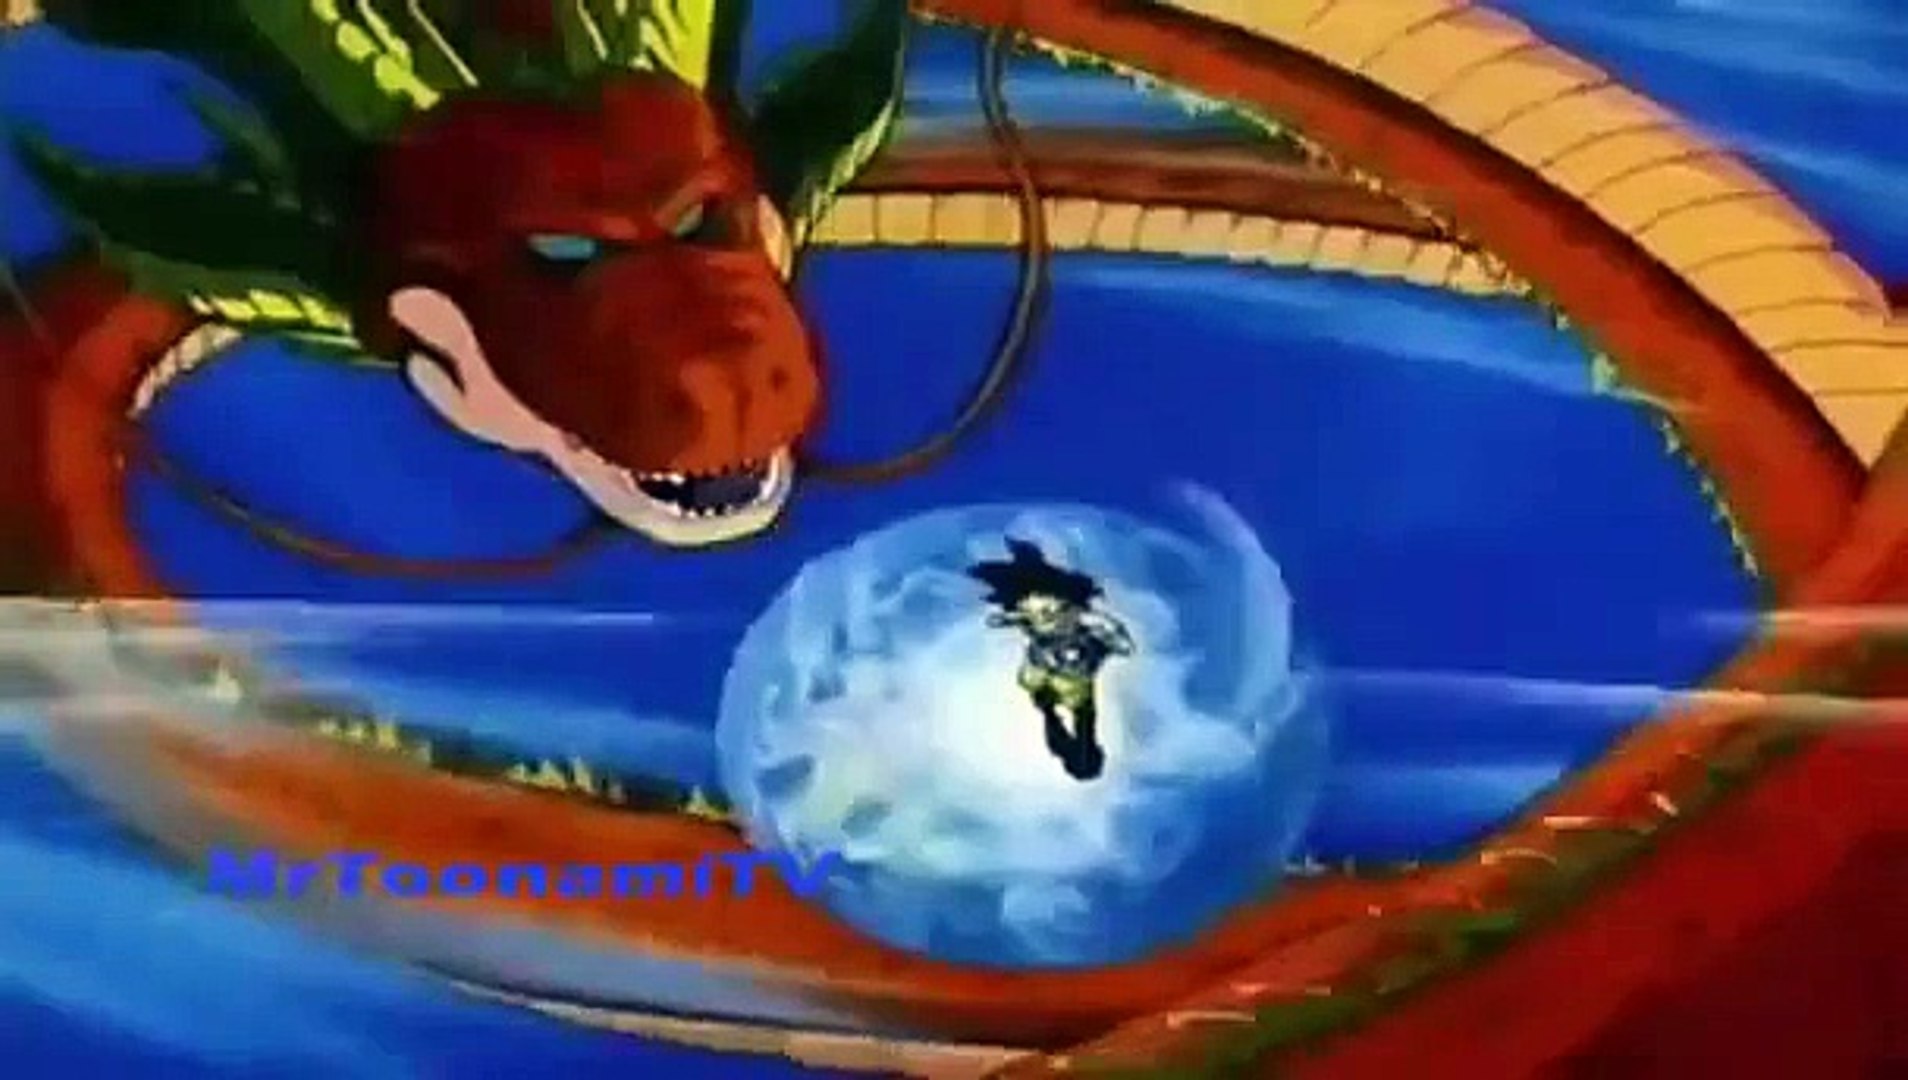 Abertura Dragon Ball GT (pt-br) - Coração de Criança - Vídeo